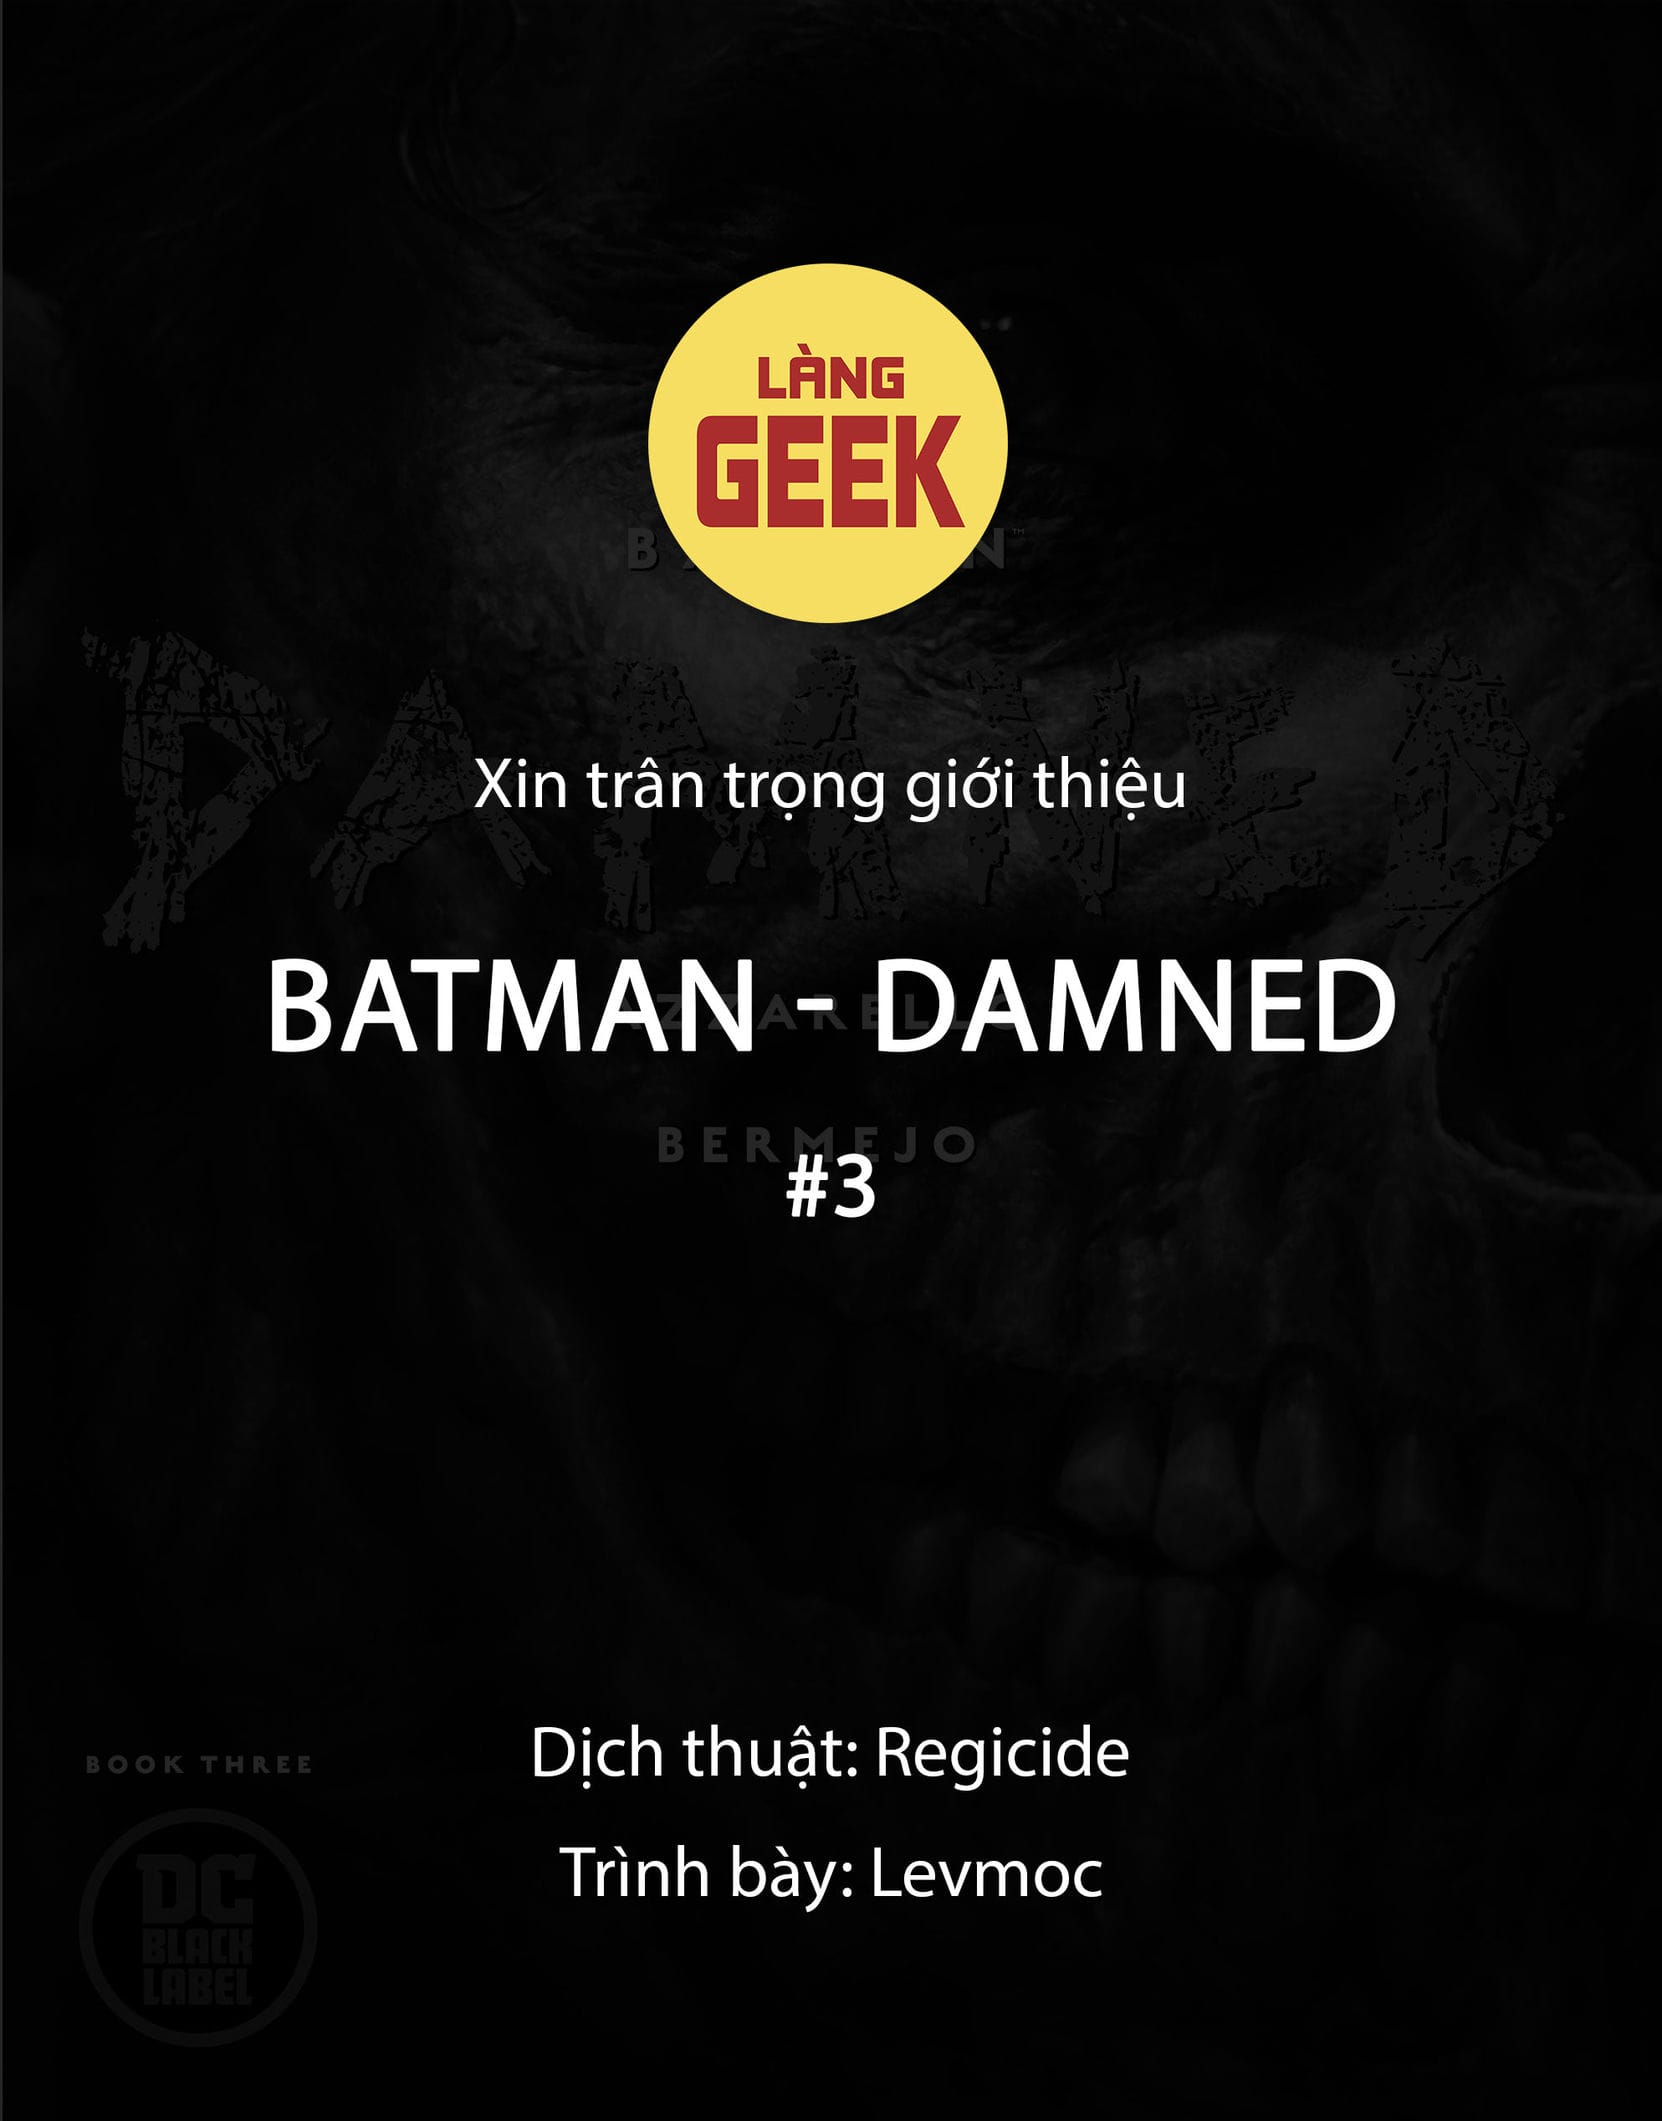 https://langgeek.net/wp-content/webpc-passthru.php?src=https://langgeek.net/wp-content/uploads/2022/12/Batman-Damned-2018-003-000-1.jpg&nocache=1